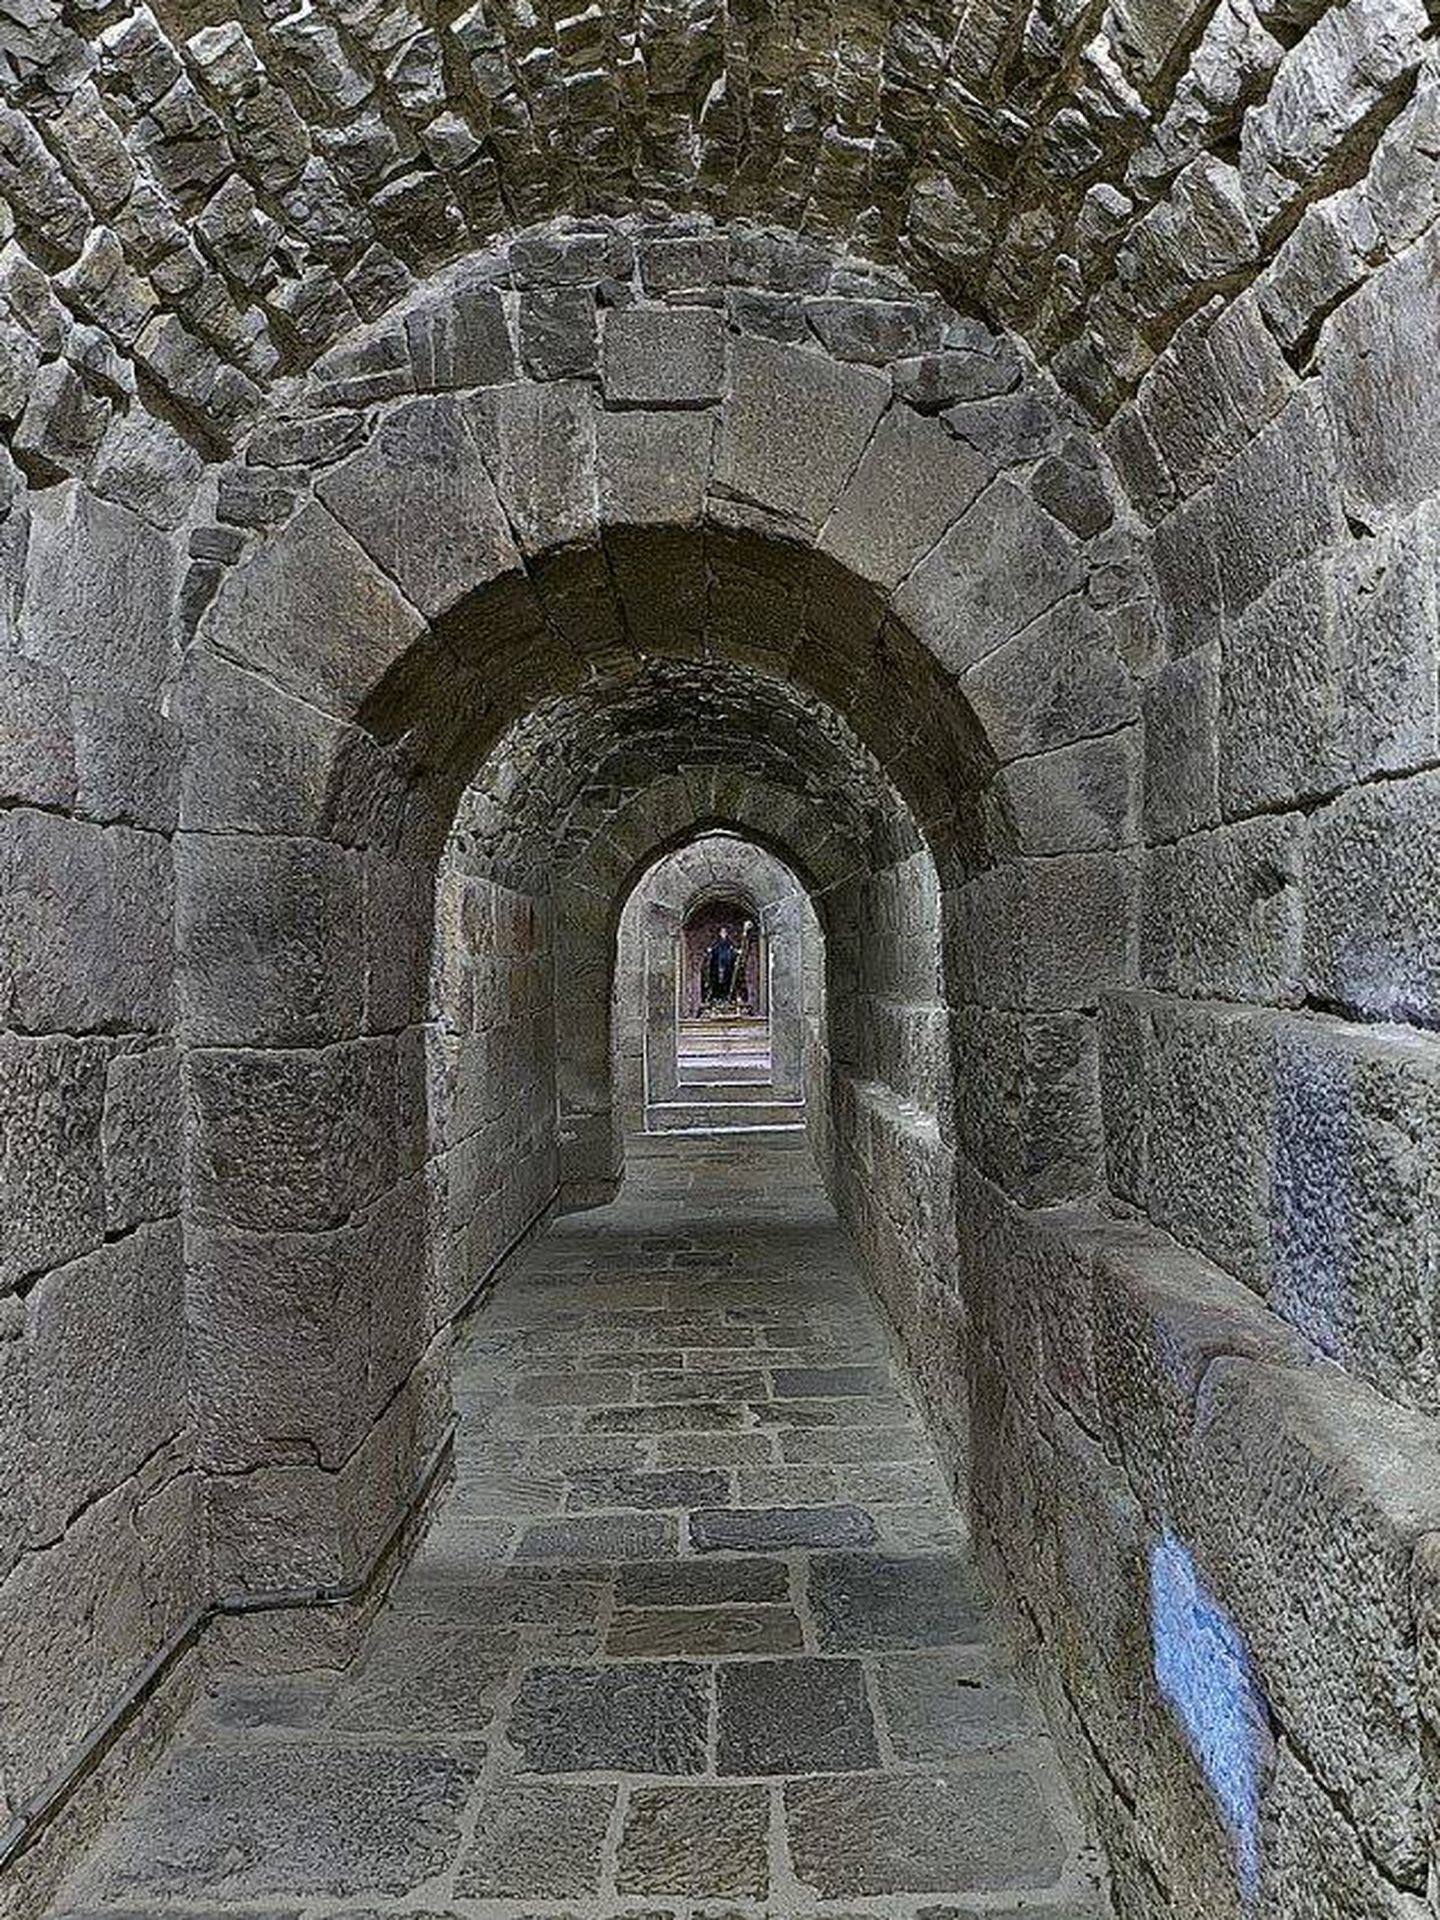 Pasadizo que comunicaba el Monasterio de Leyre con el exterior y donde se esconde la cripta dedicada al abad San Virila. (C.C.)